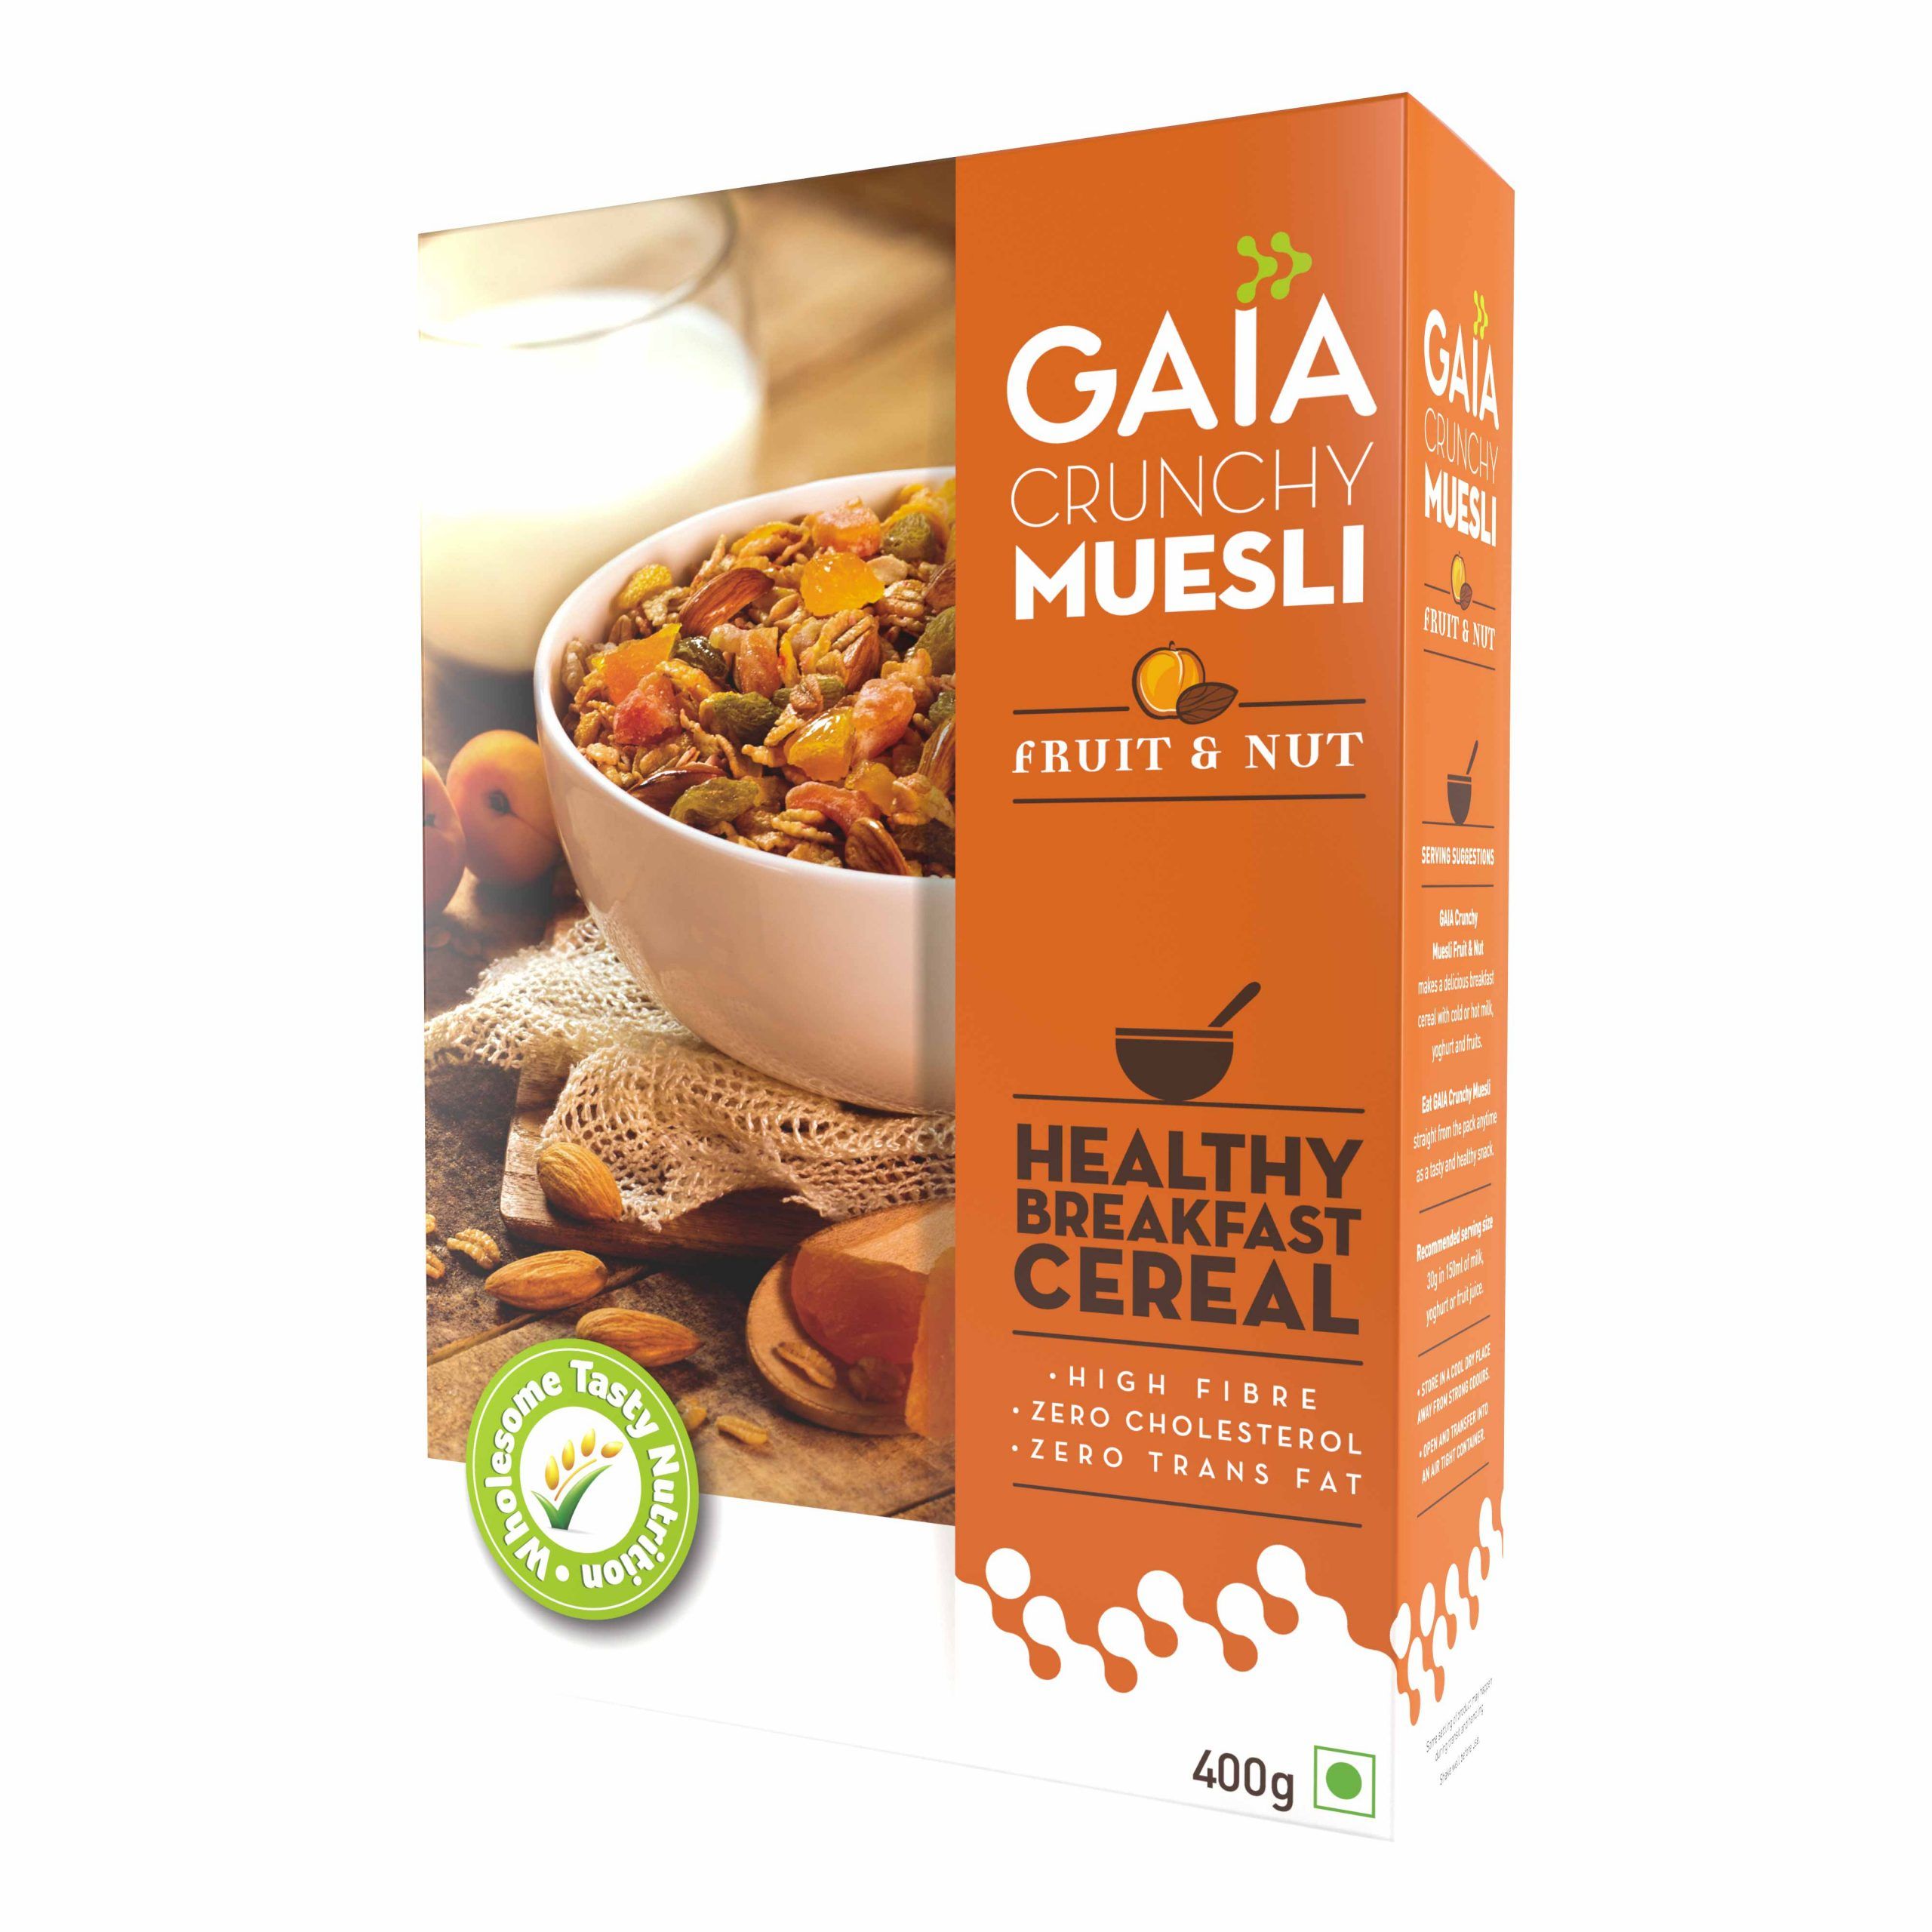 Gaia Crunchy Muesli – Fruit & Nut Image